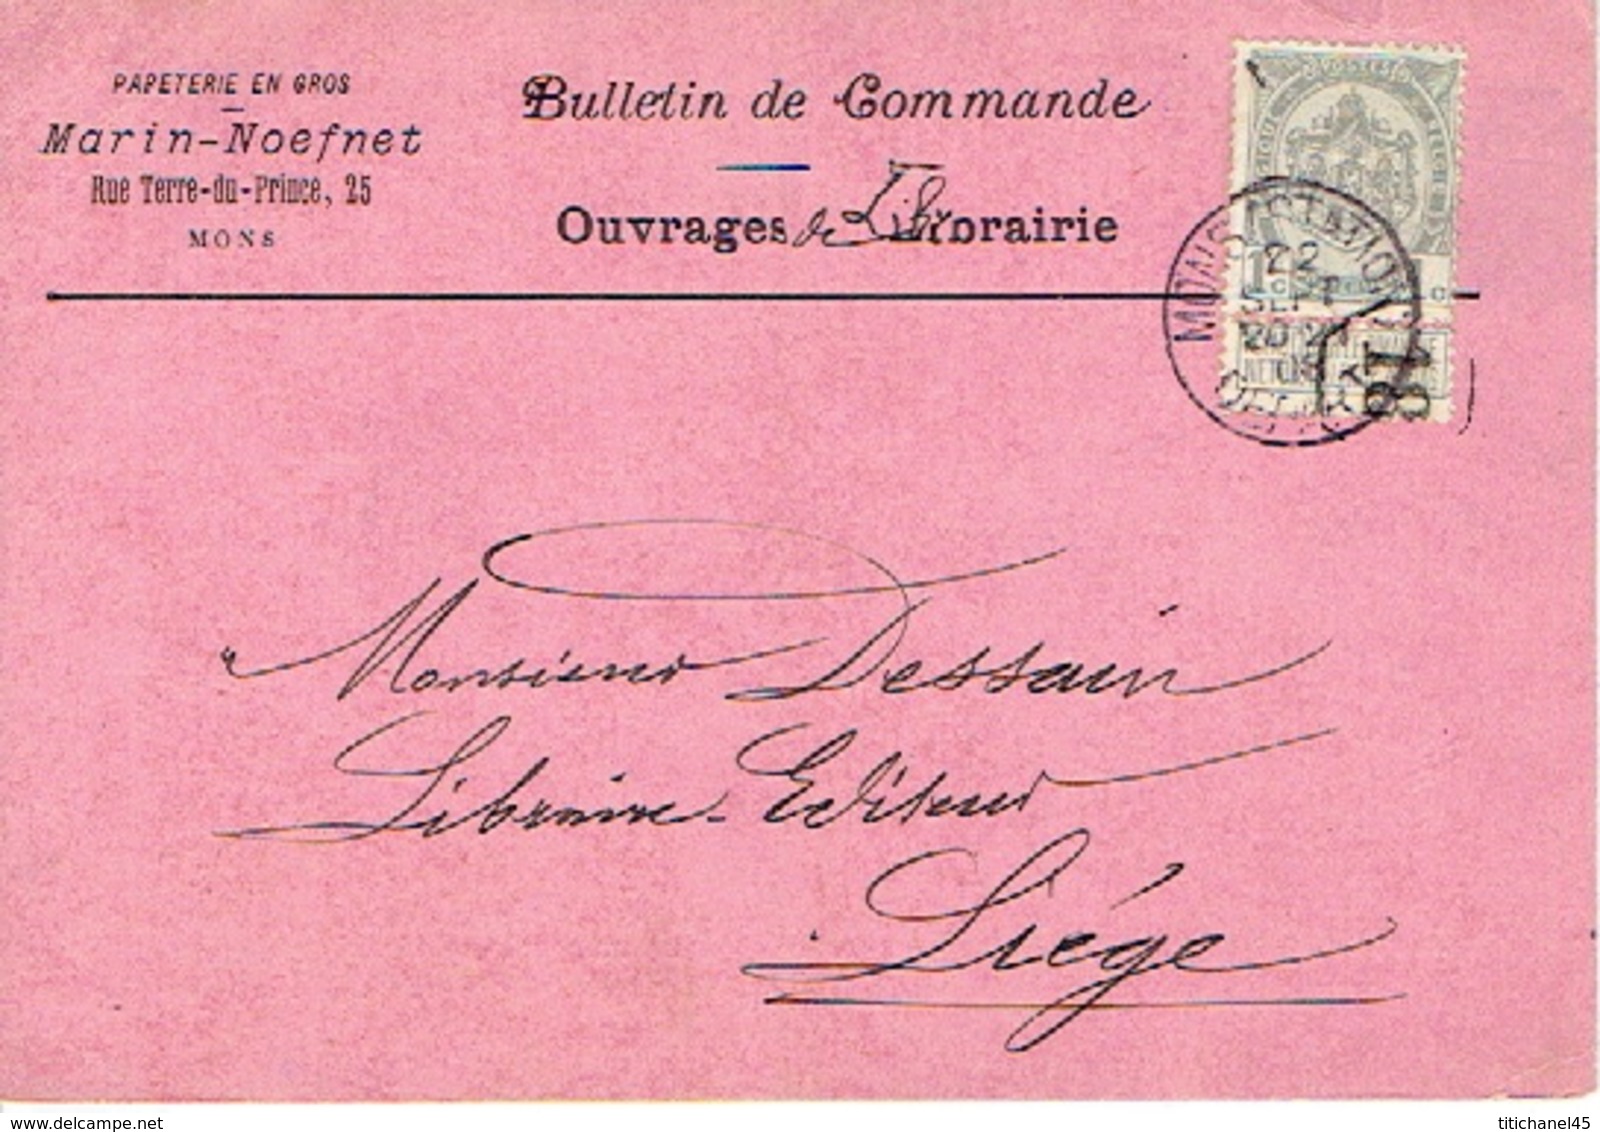 CP/PK Publicitaire MONS 1908 - MARIN-NOEFNET- Papeterie En Gros - Mons